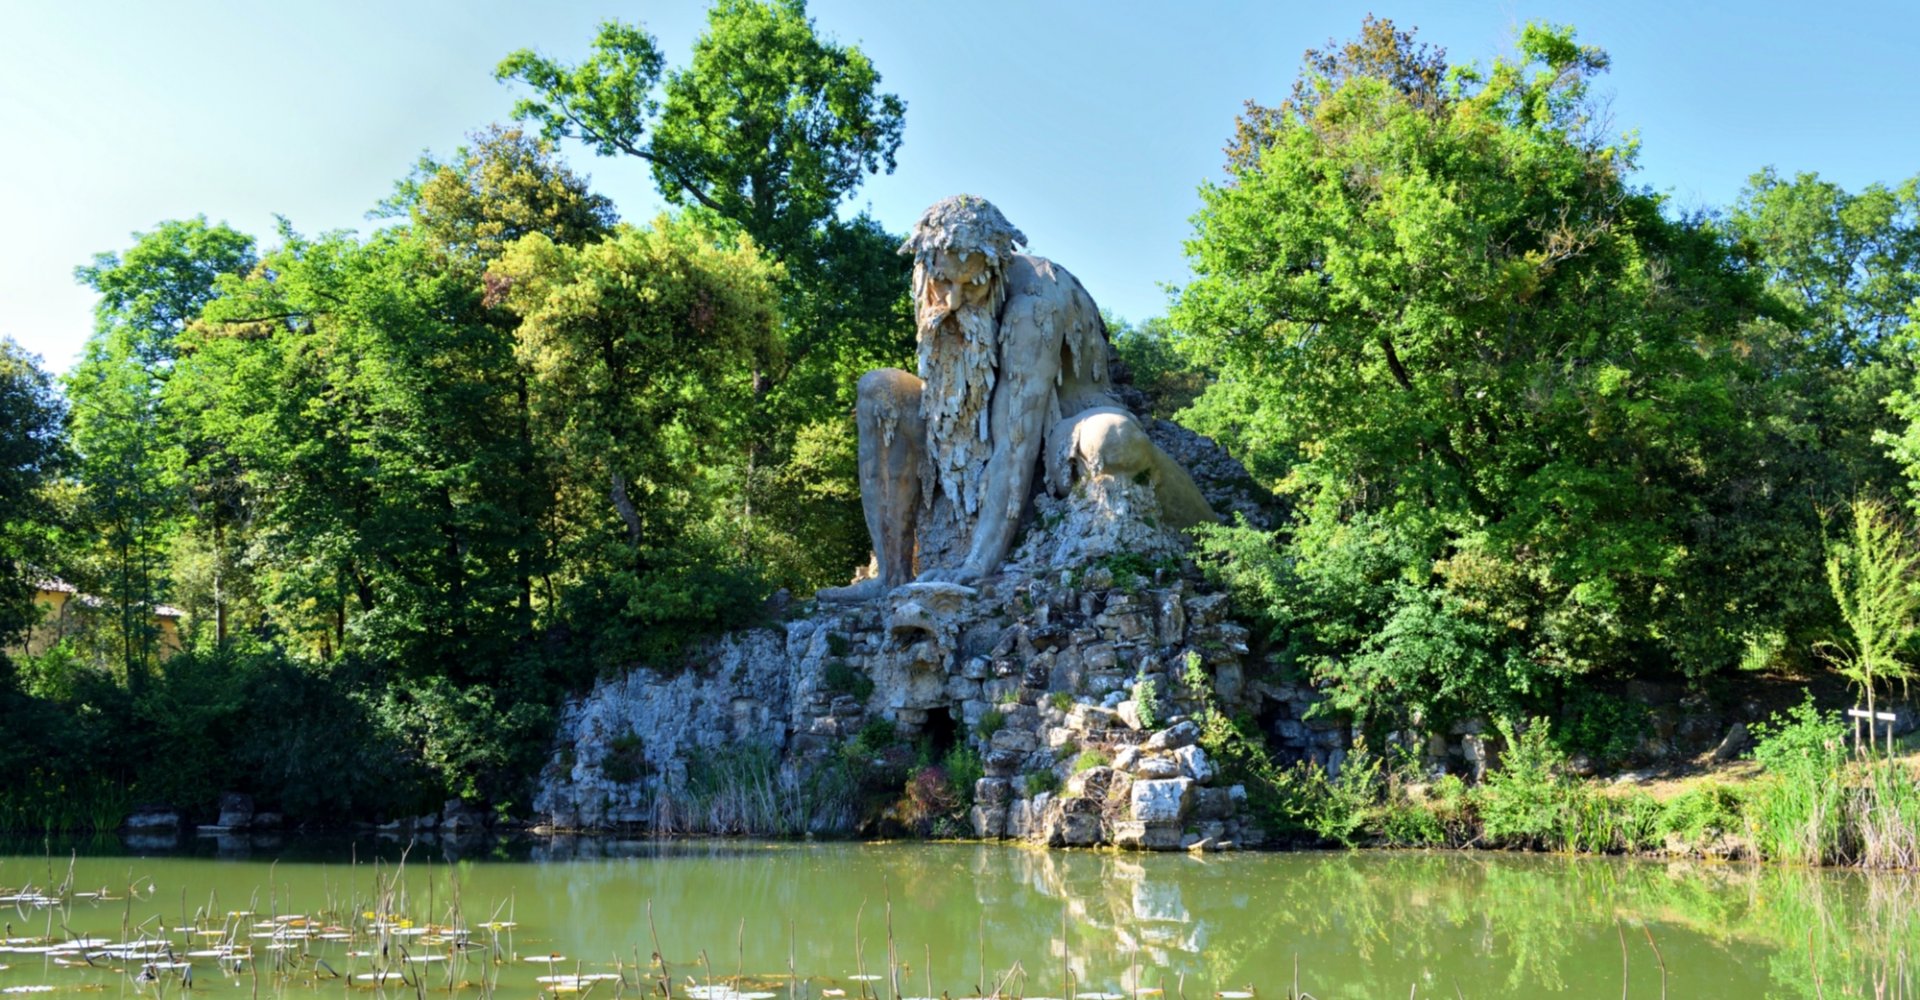 Il Colosso dell'Appennino del Giambologna, scultura situata a Firenze nel parco di Villa Demidoff